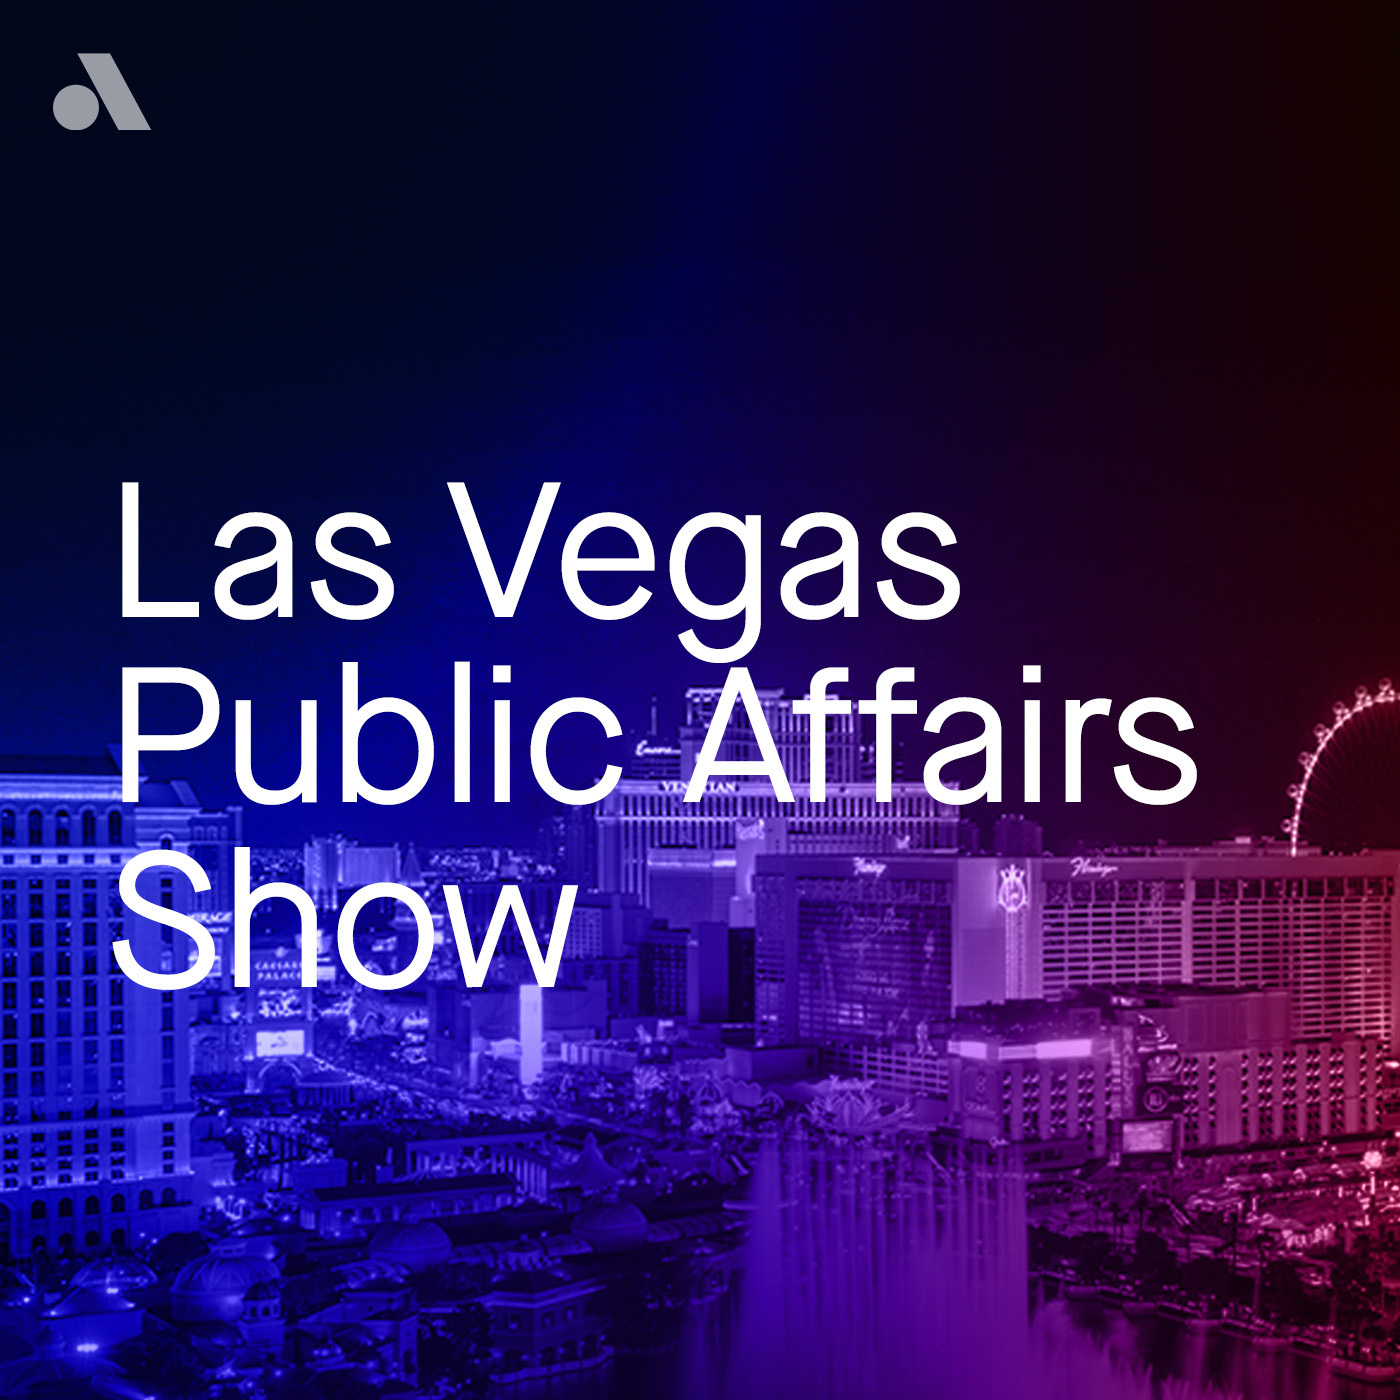 The Las Vegas Public Affairs Show